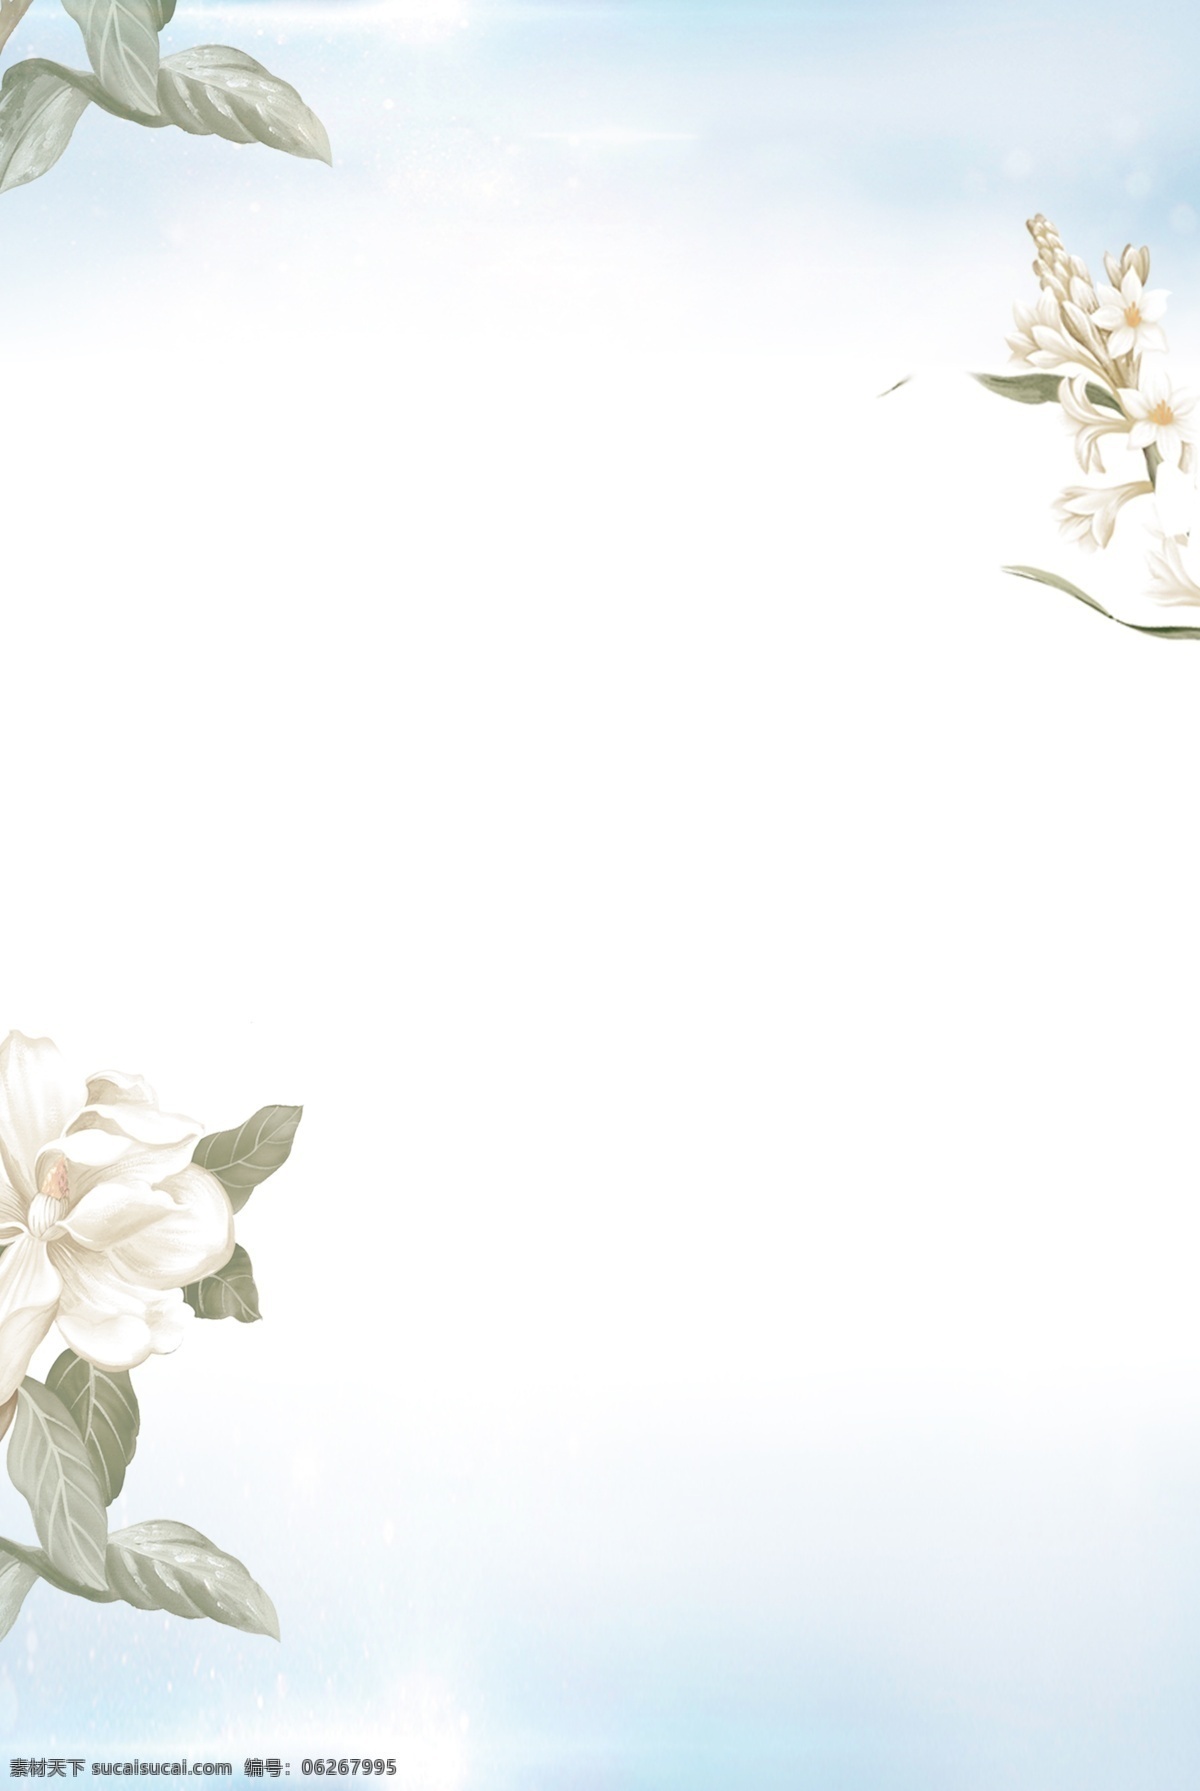 白色 清新 手绘 花卉 背景 白色背景 清新背景 手绘背景 花卉背景 广告背景 通用背景